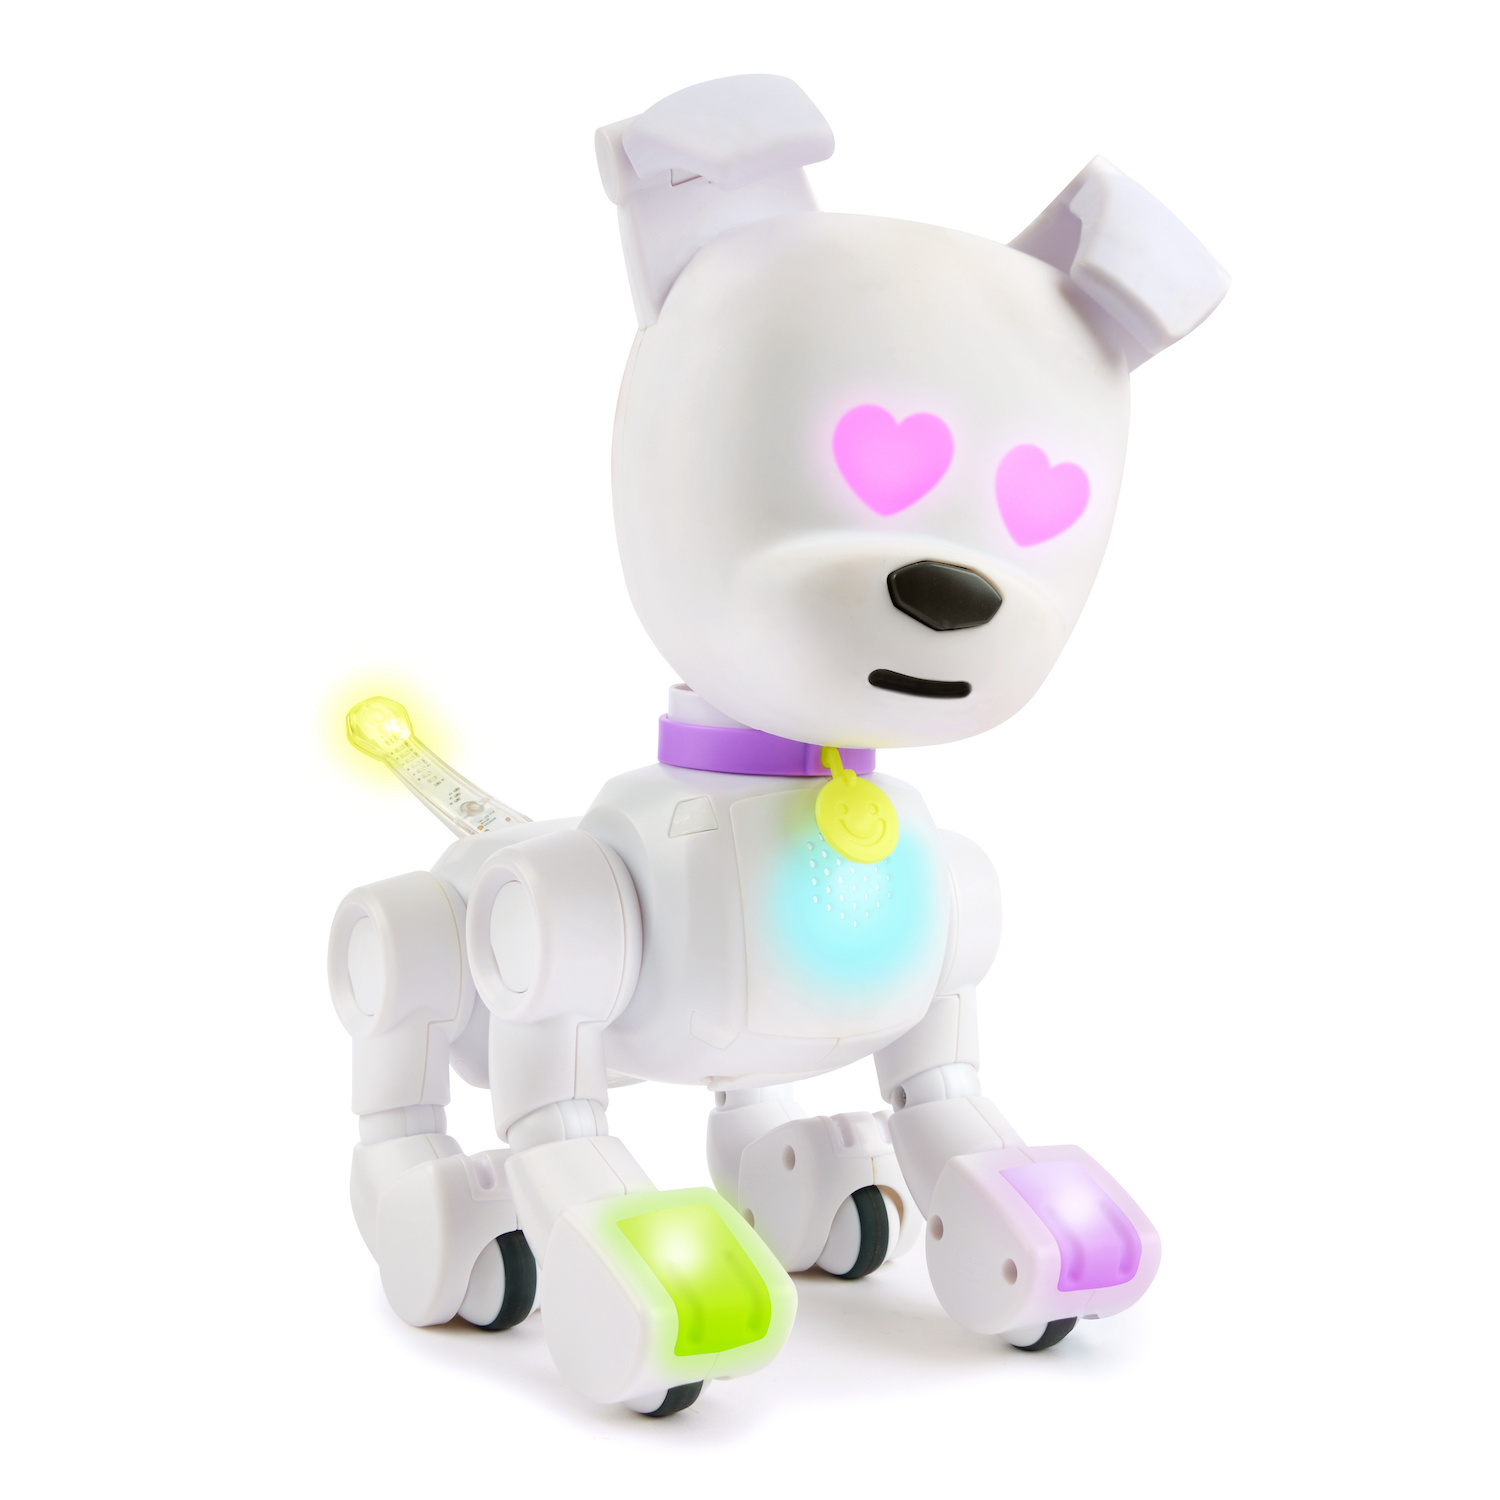 Dog-E - Véritable Chien Robot Interactif - Electronique Junior